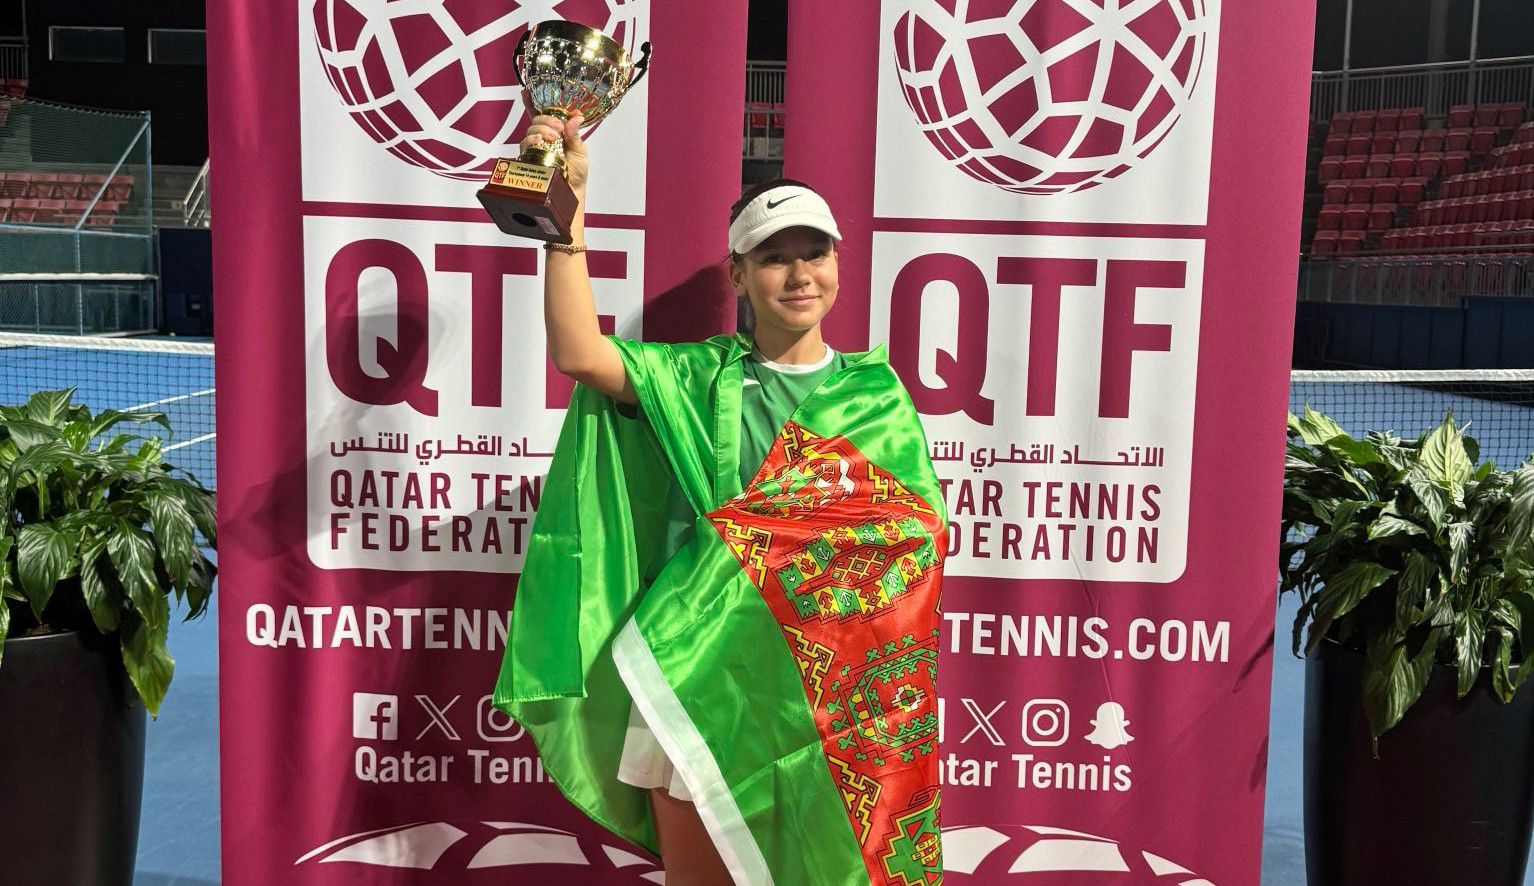 Türkmenistanly tennisçi 14 ýaşa çenli ýetginjekleriň arasynda Katarda geçirilýän ýaryşda kubok eýeledi